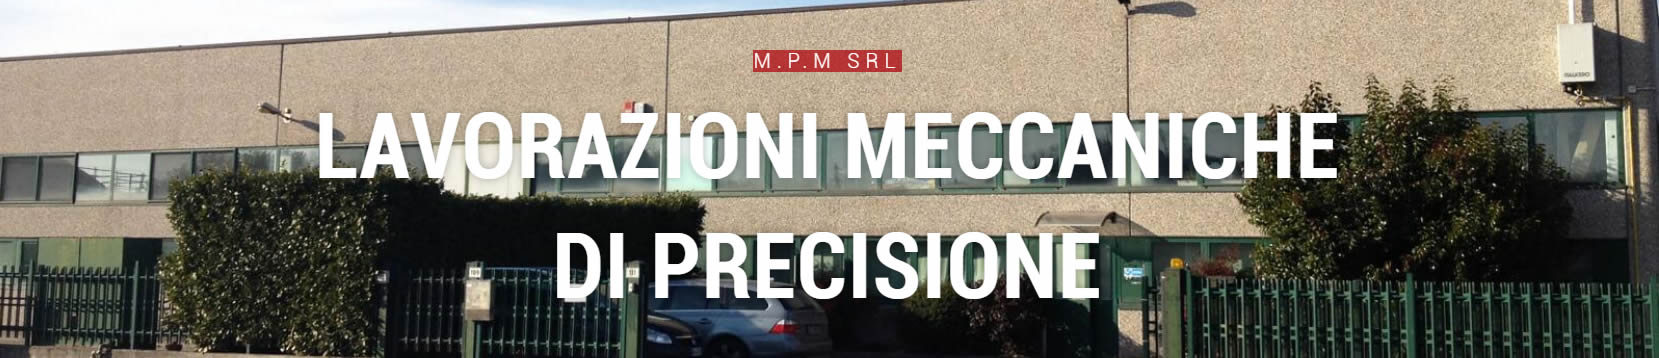 Officina meccanica di precisione Fagnano Olona MPM srl